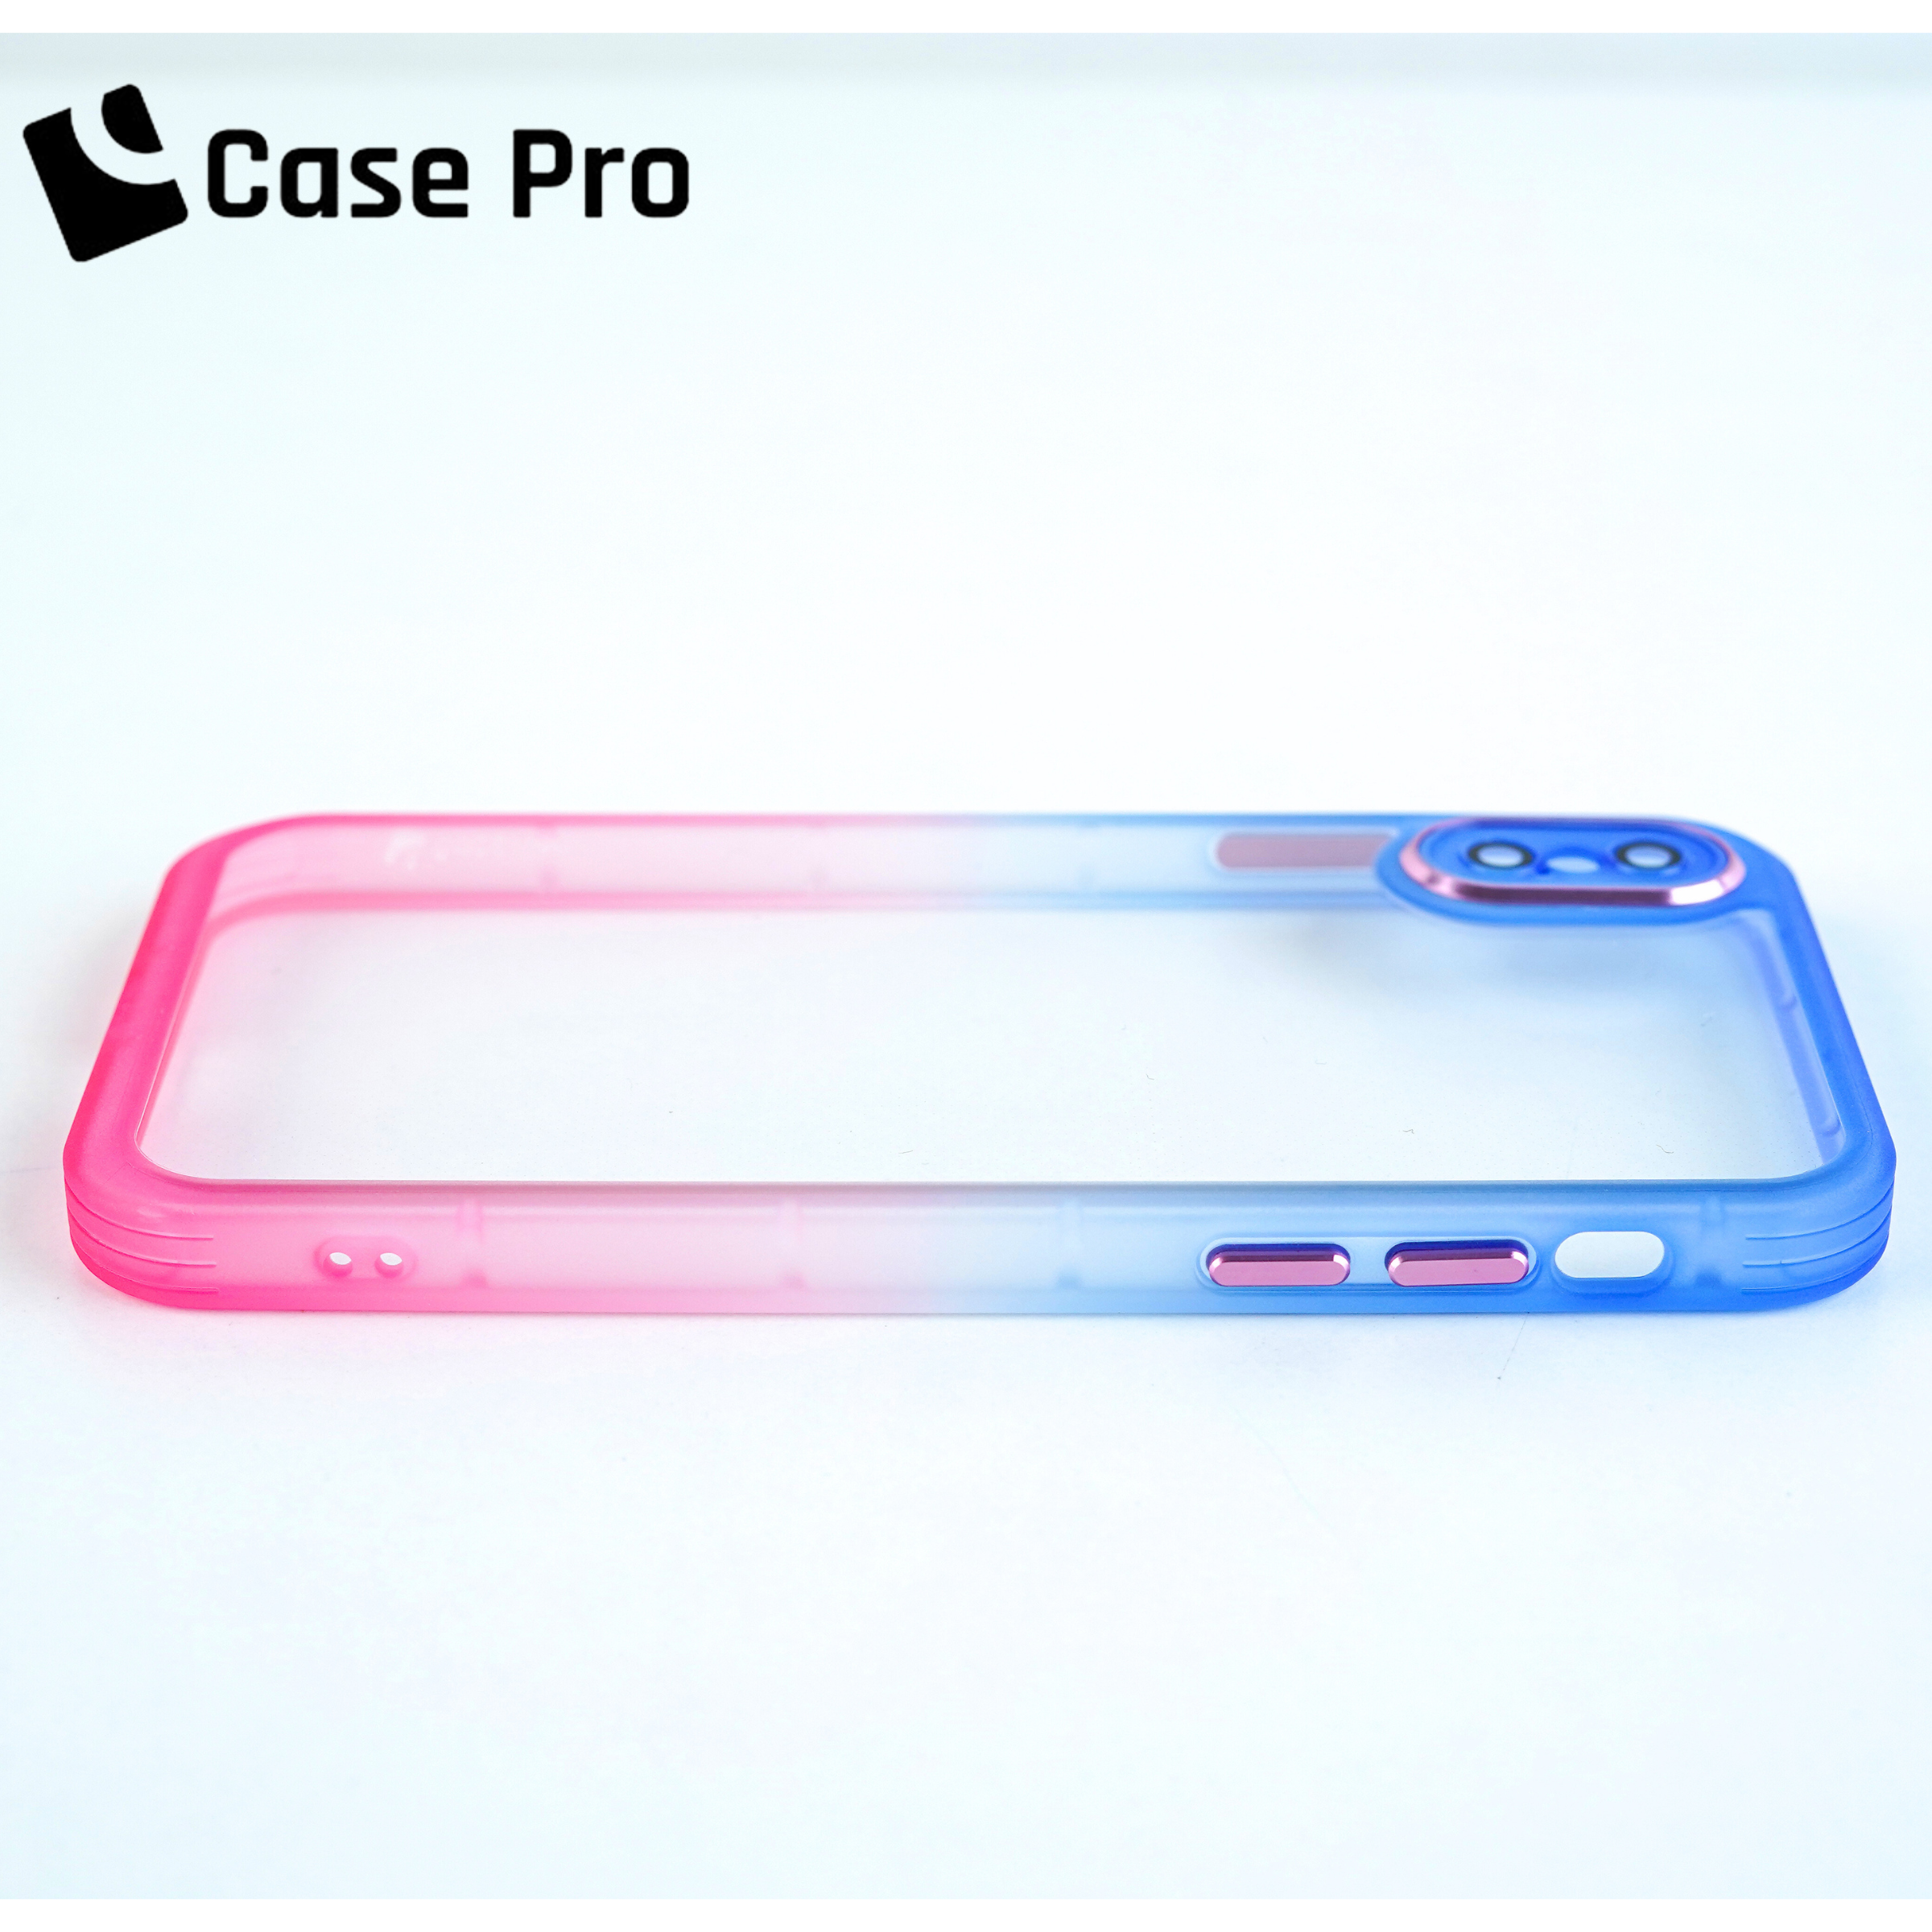 CasePro iPhone X/XS Case (Color Gradient)